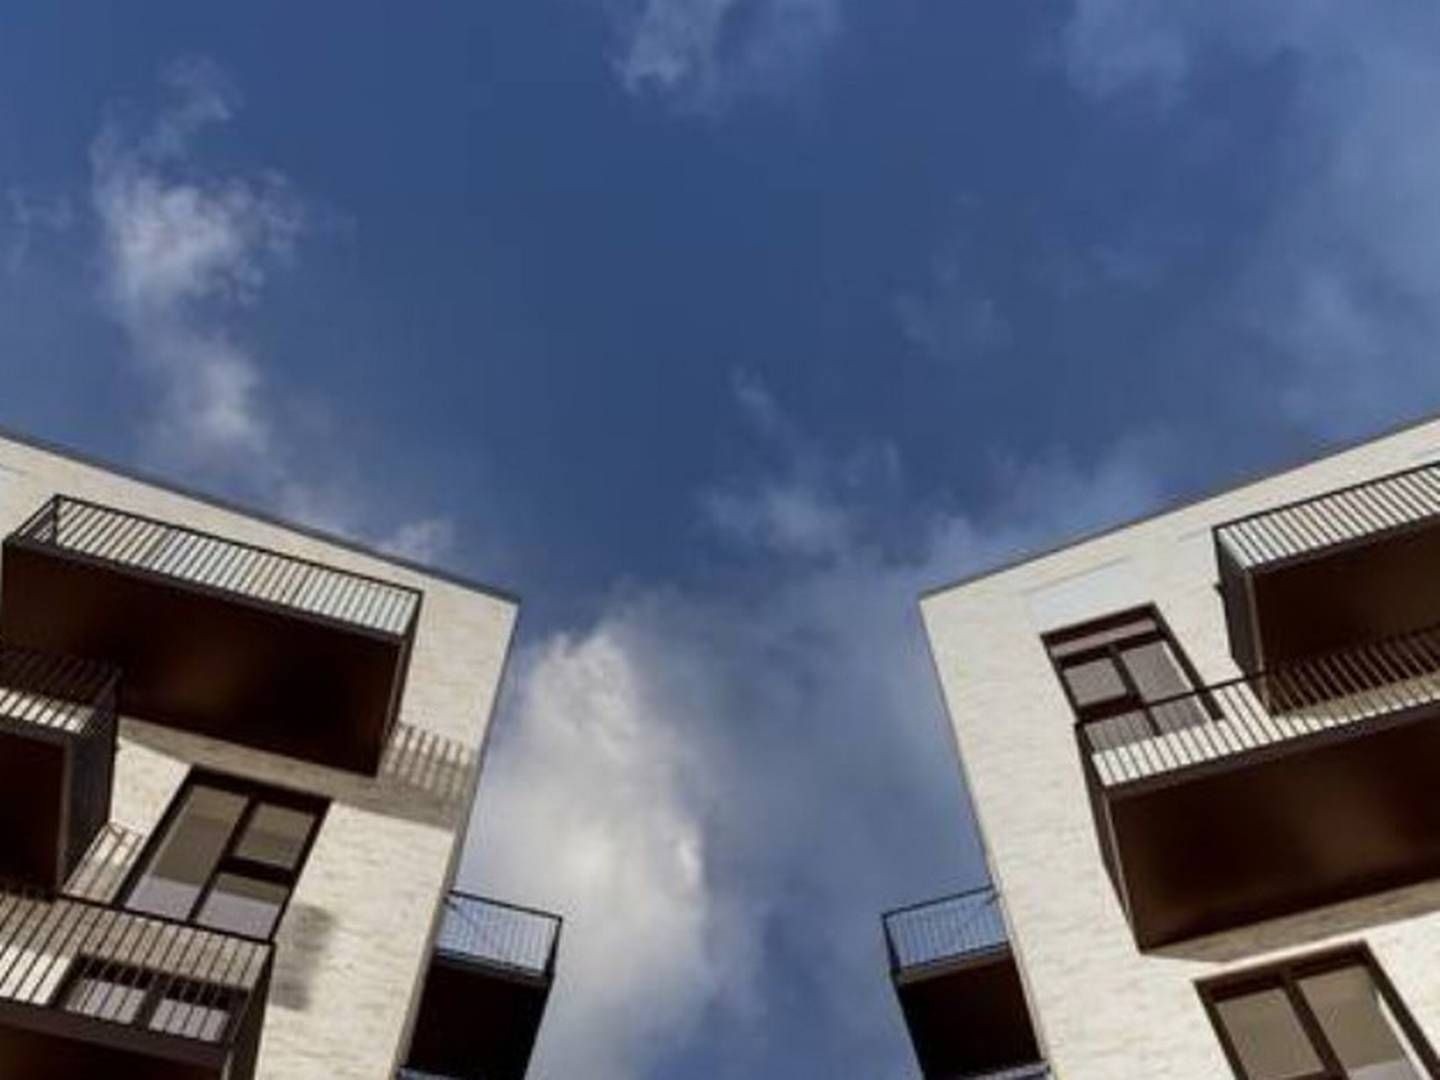 Strandby Huse består af tre punkthuse i fire etager, der betegnes som en moderne fortolkning af de kendte etageboligbebyggelser i Danmark. Illustration: Danielsen Architecture